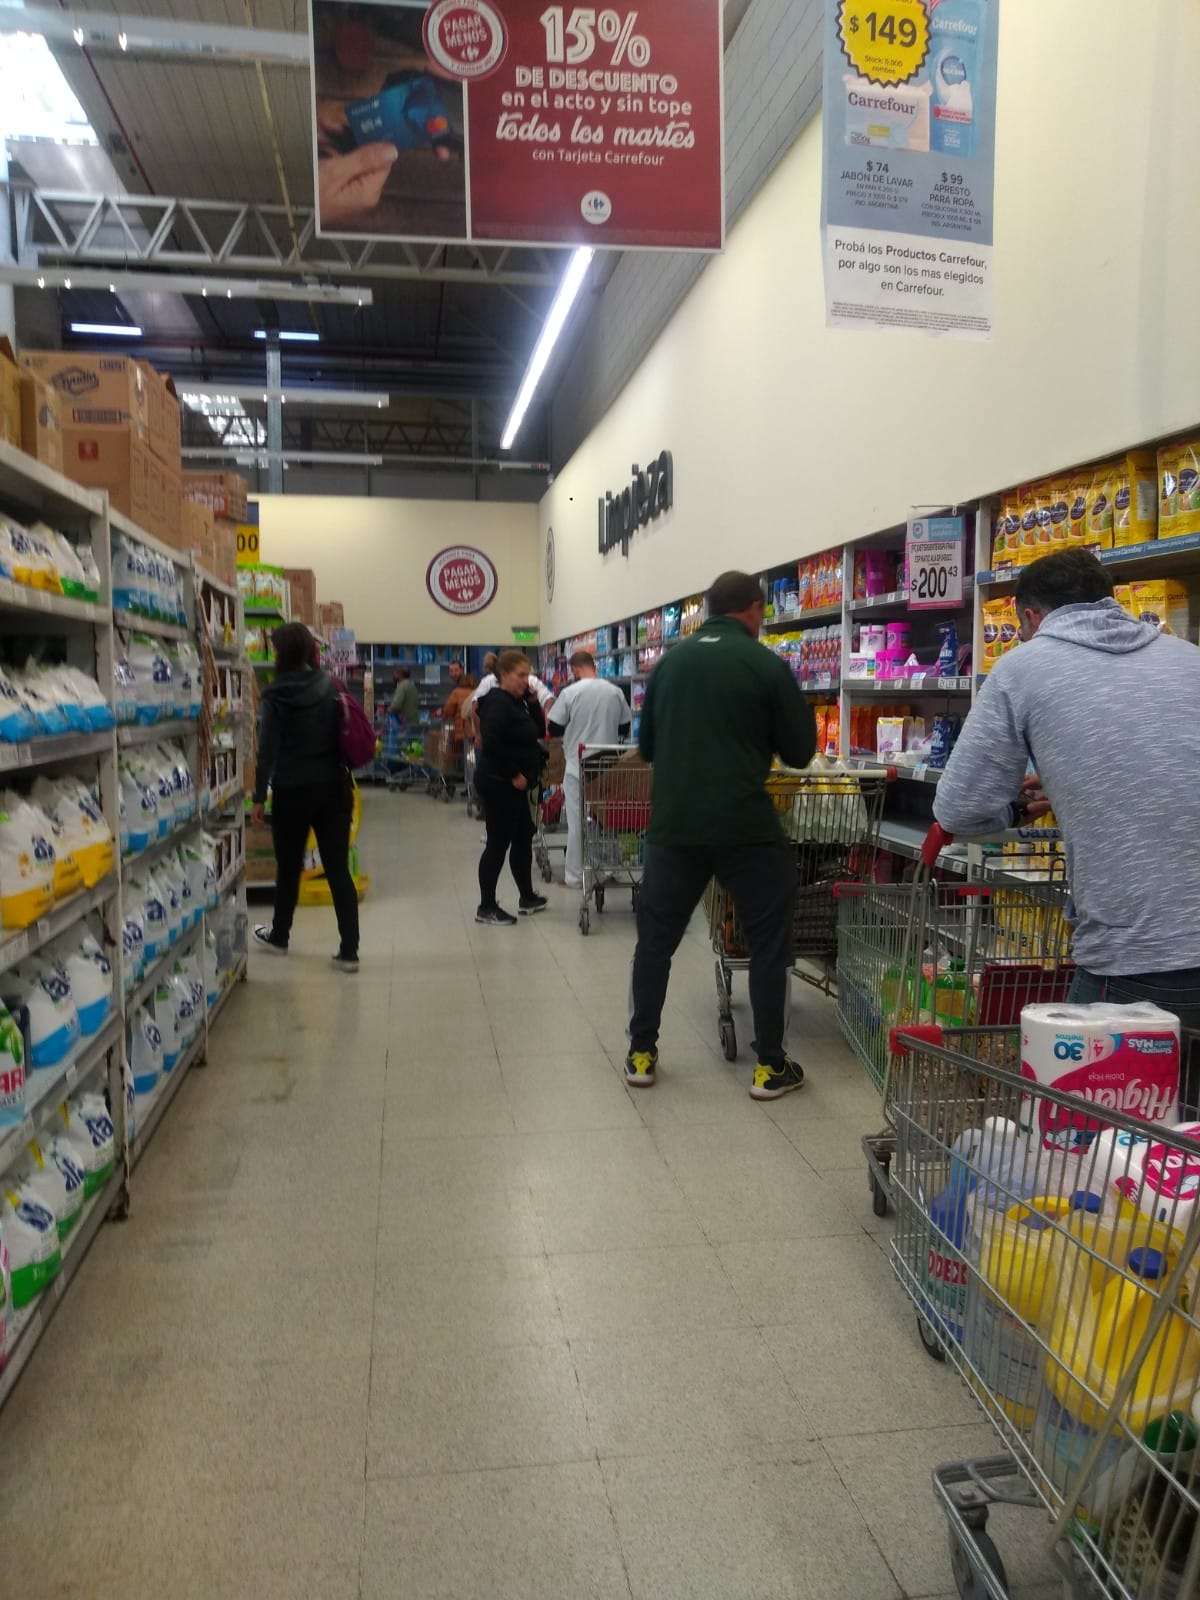 Una cadena de supermercados congeló el precio de 1.500 productos por tres meses